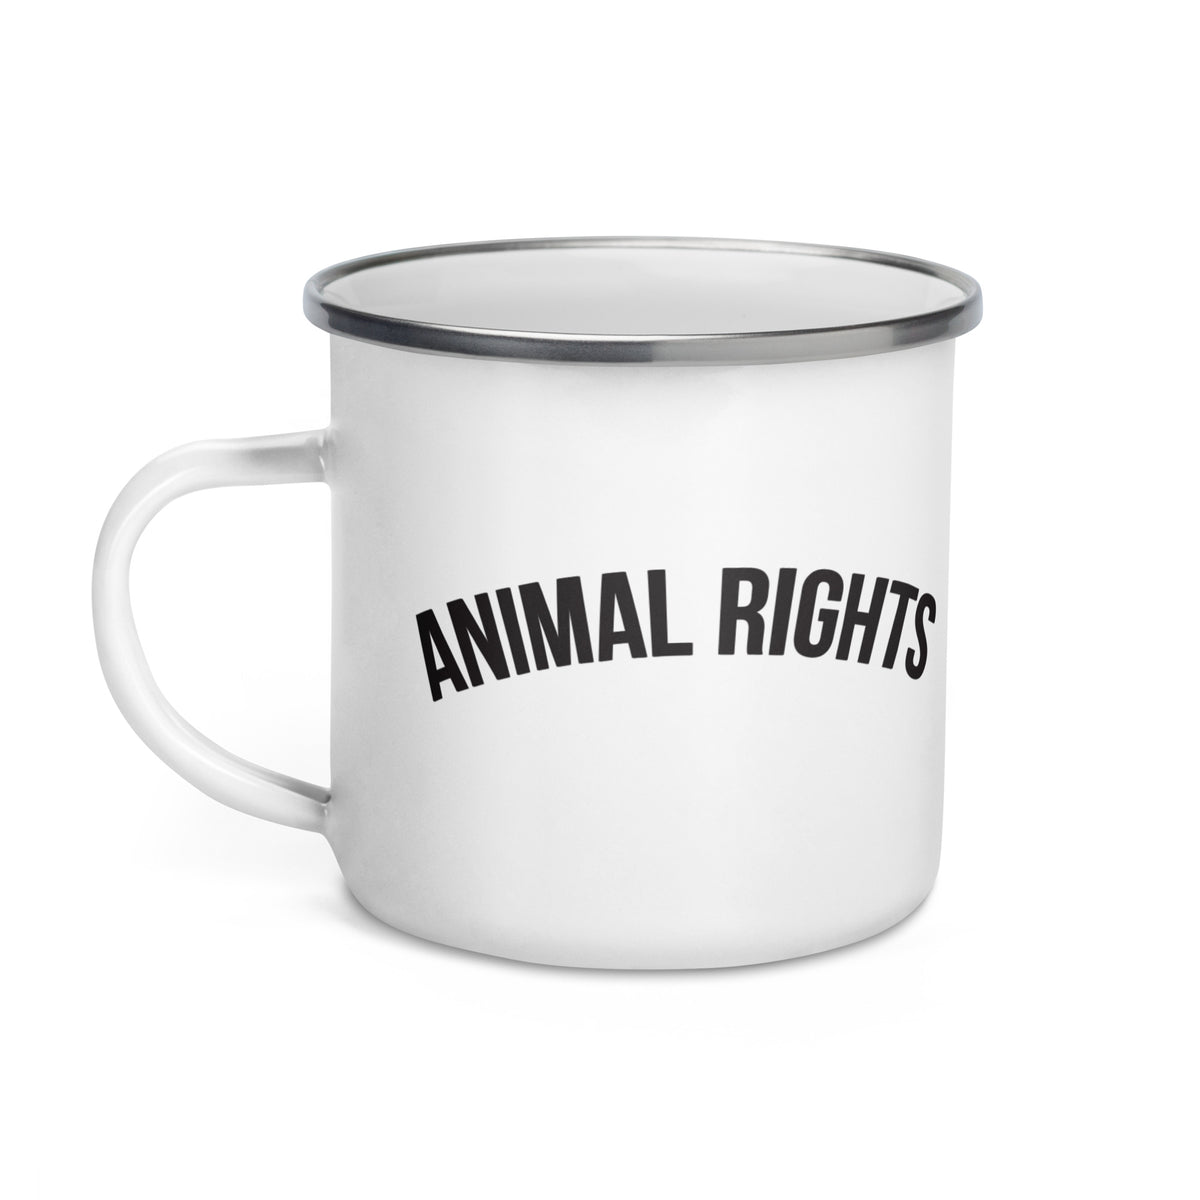 ANIMAL RIGHTS Enamel Mug